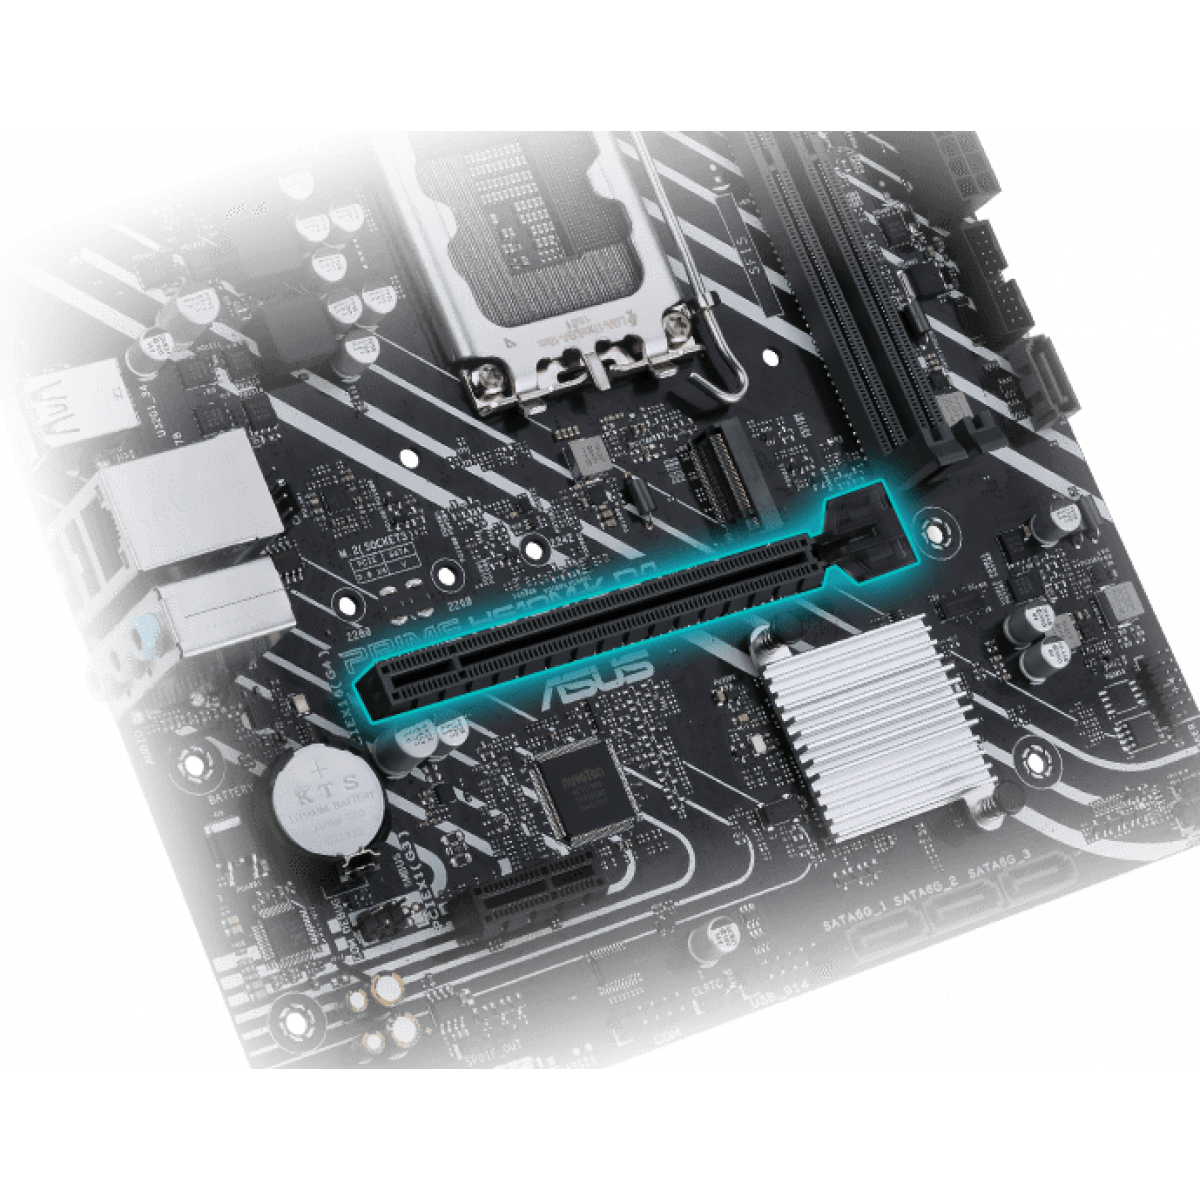 Mainboard Asus Prime H610M-K DDR4 | LGA1700 - mATX